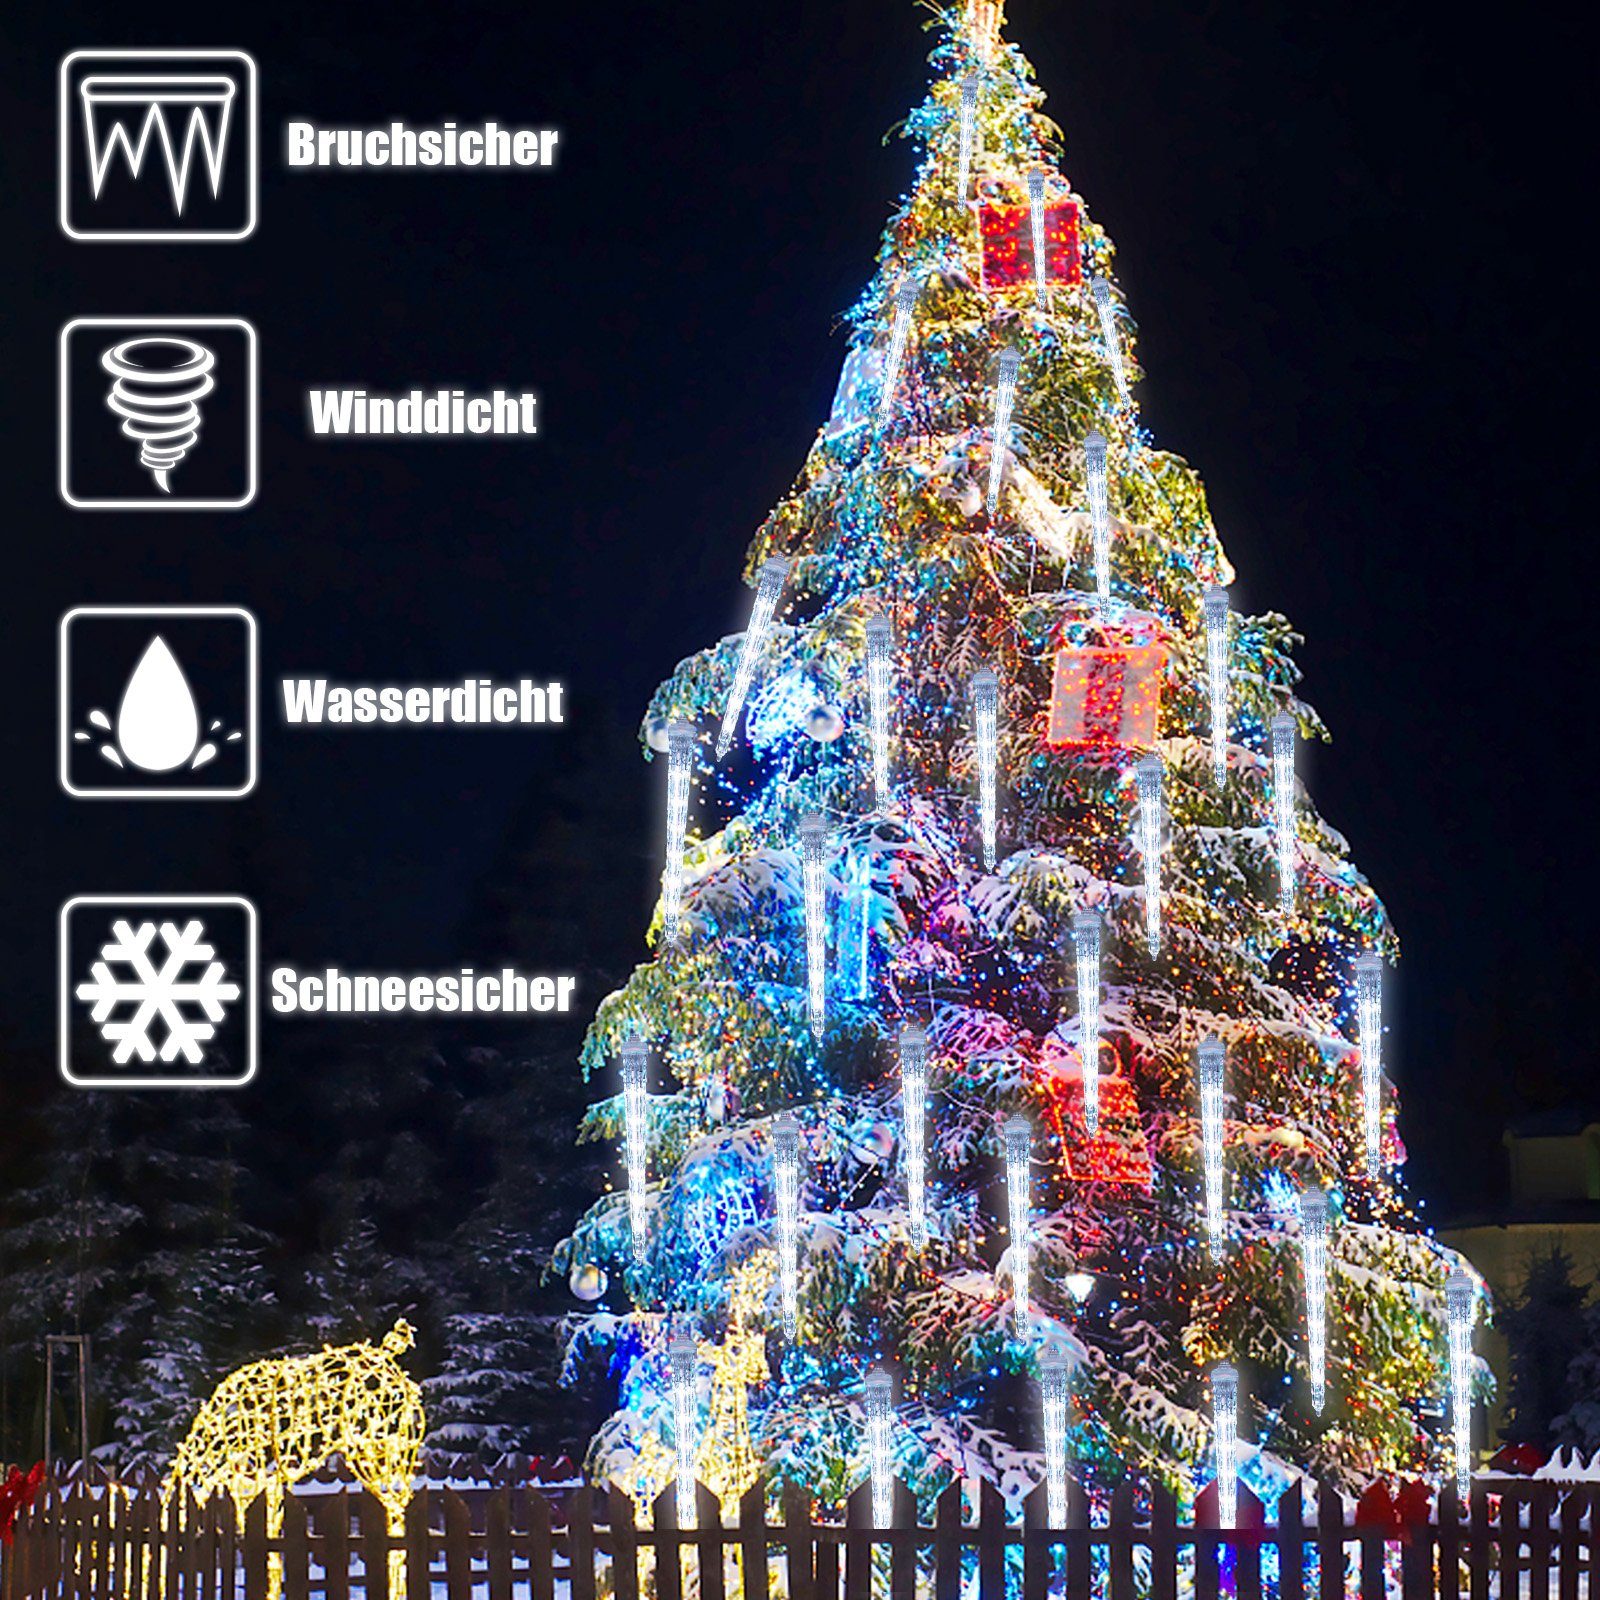 Rosnek LED-Lichterkette 7V, Lichter; anschliessbar, Eiszapfen 8 Eiszapfen Bäume, Weihnachten für LED 2.8M, wasserdicht, mit 96-flammig, Traufe